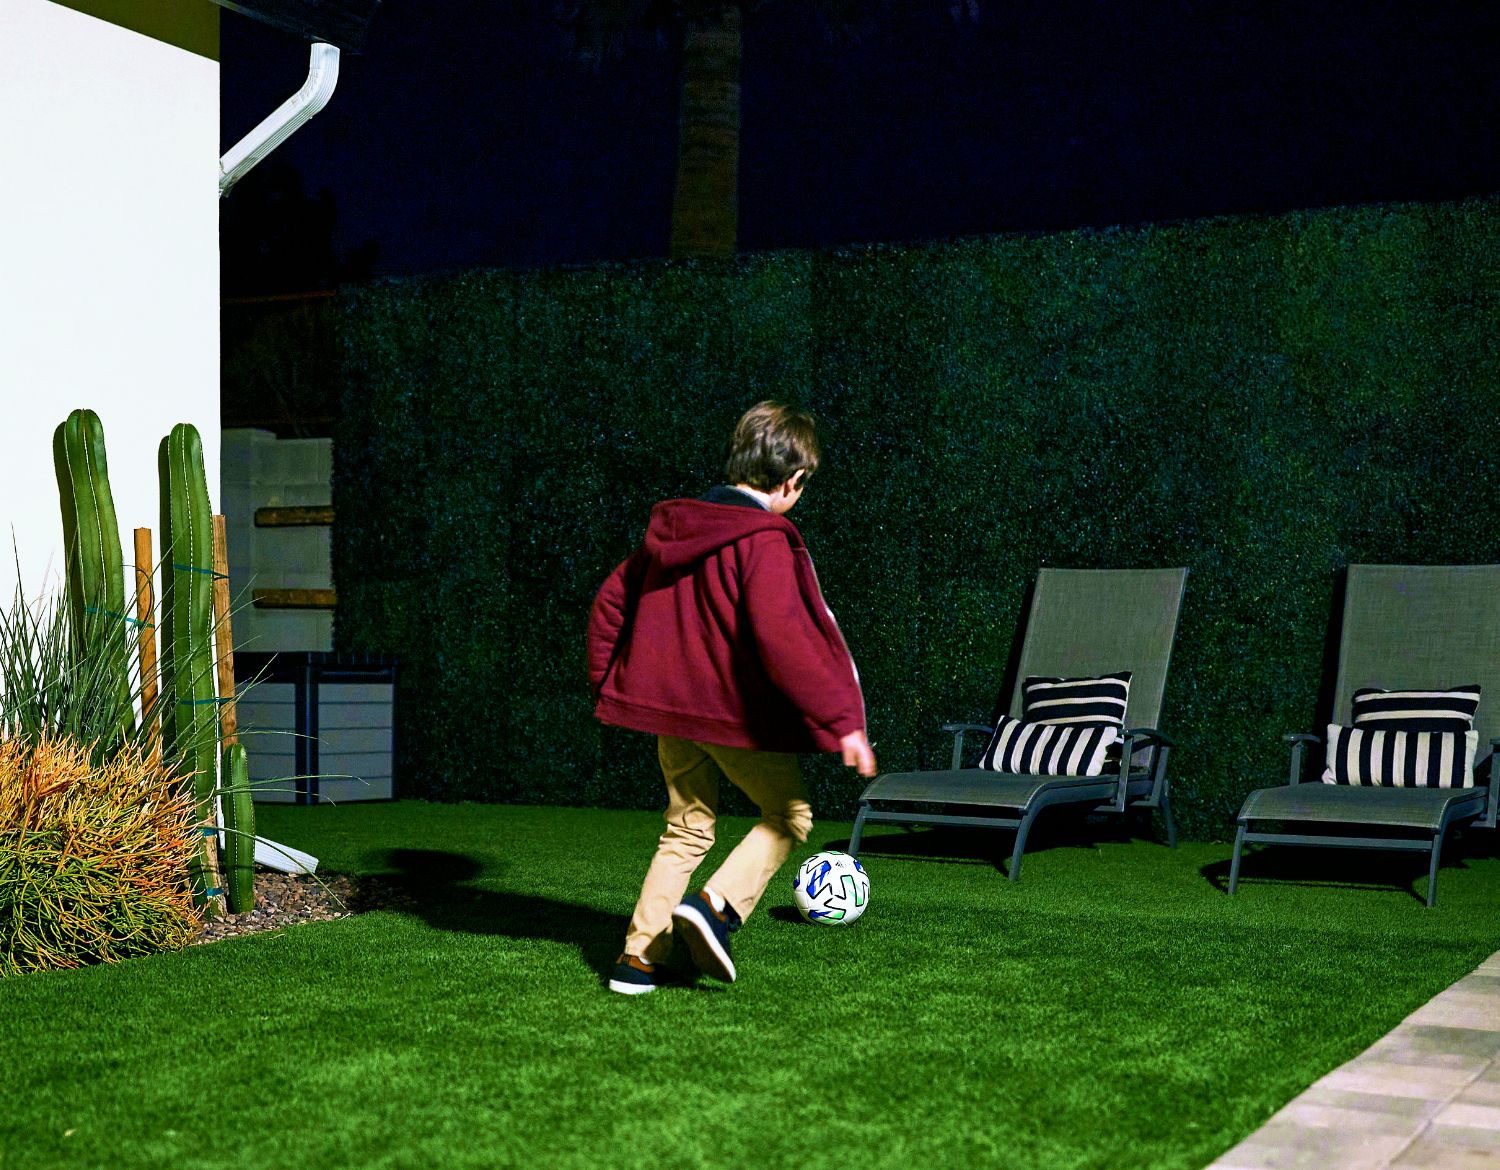 En ung pojke spelar fotboll i trädgården på natten